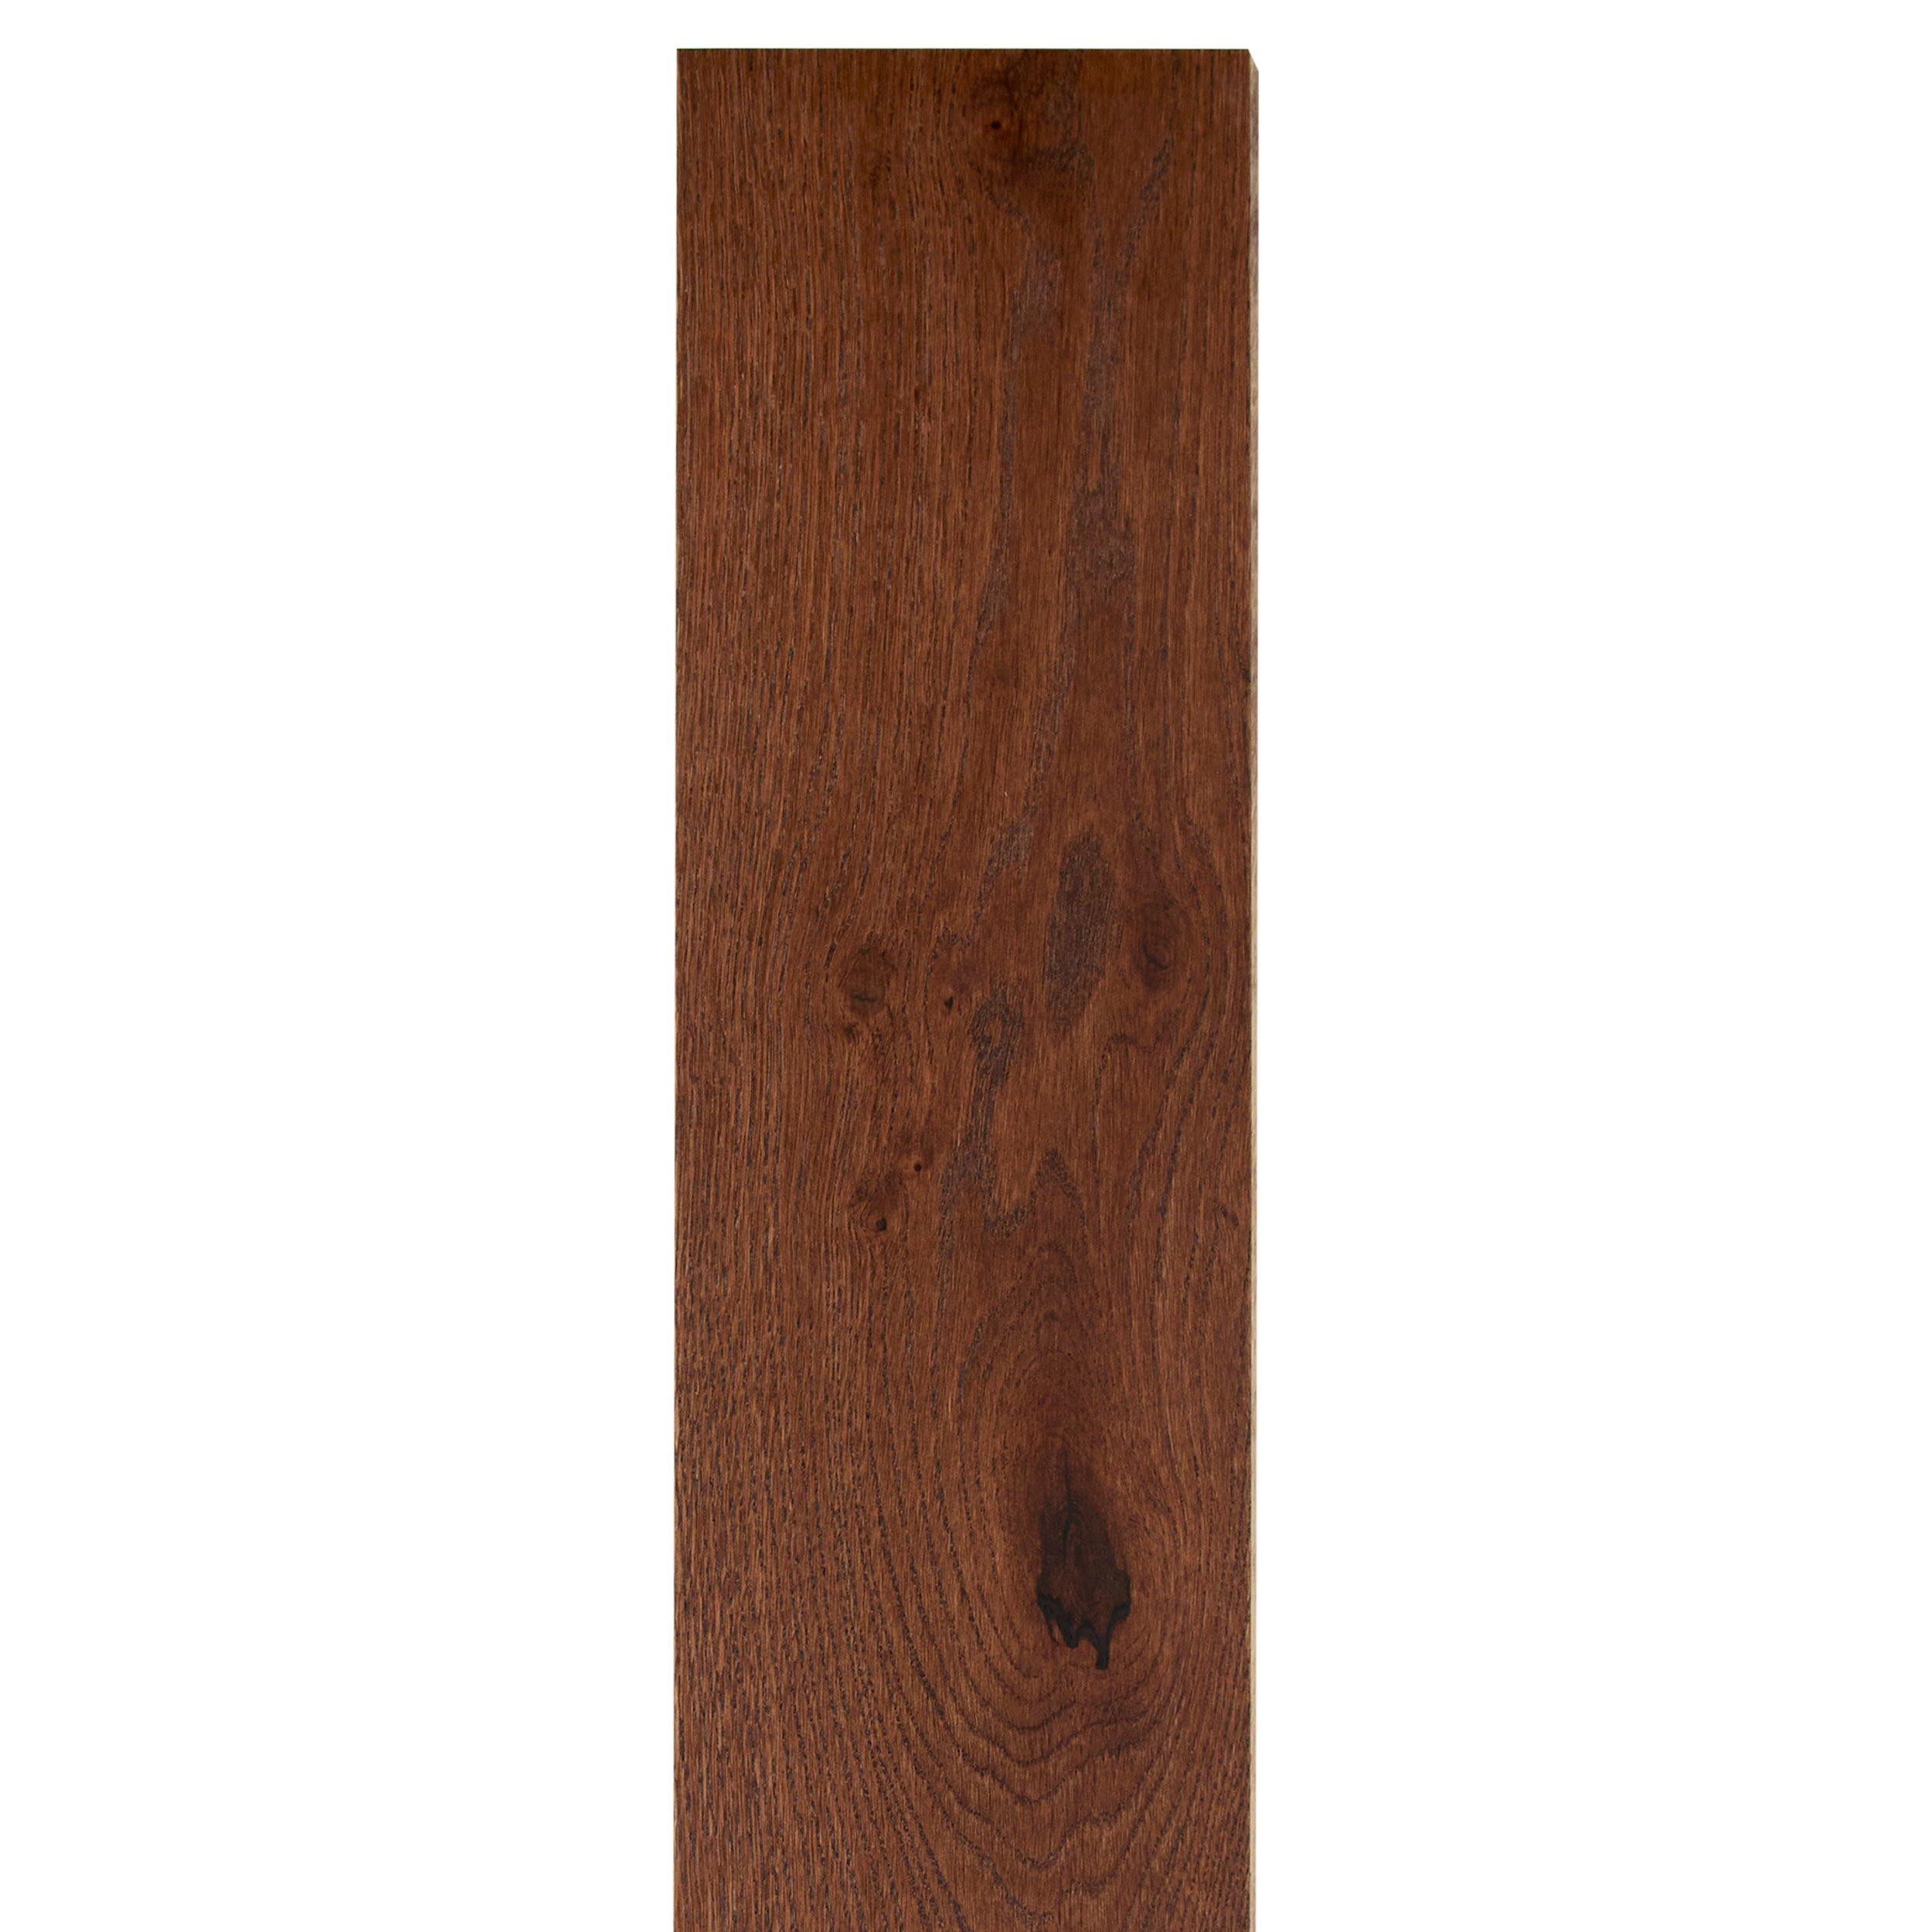 Gresham Herringbone White Oak Engineered Hardwood